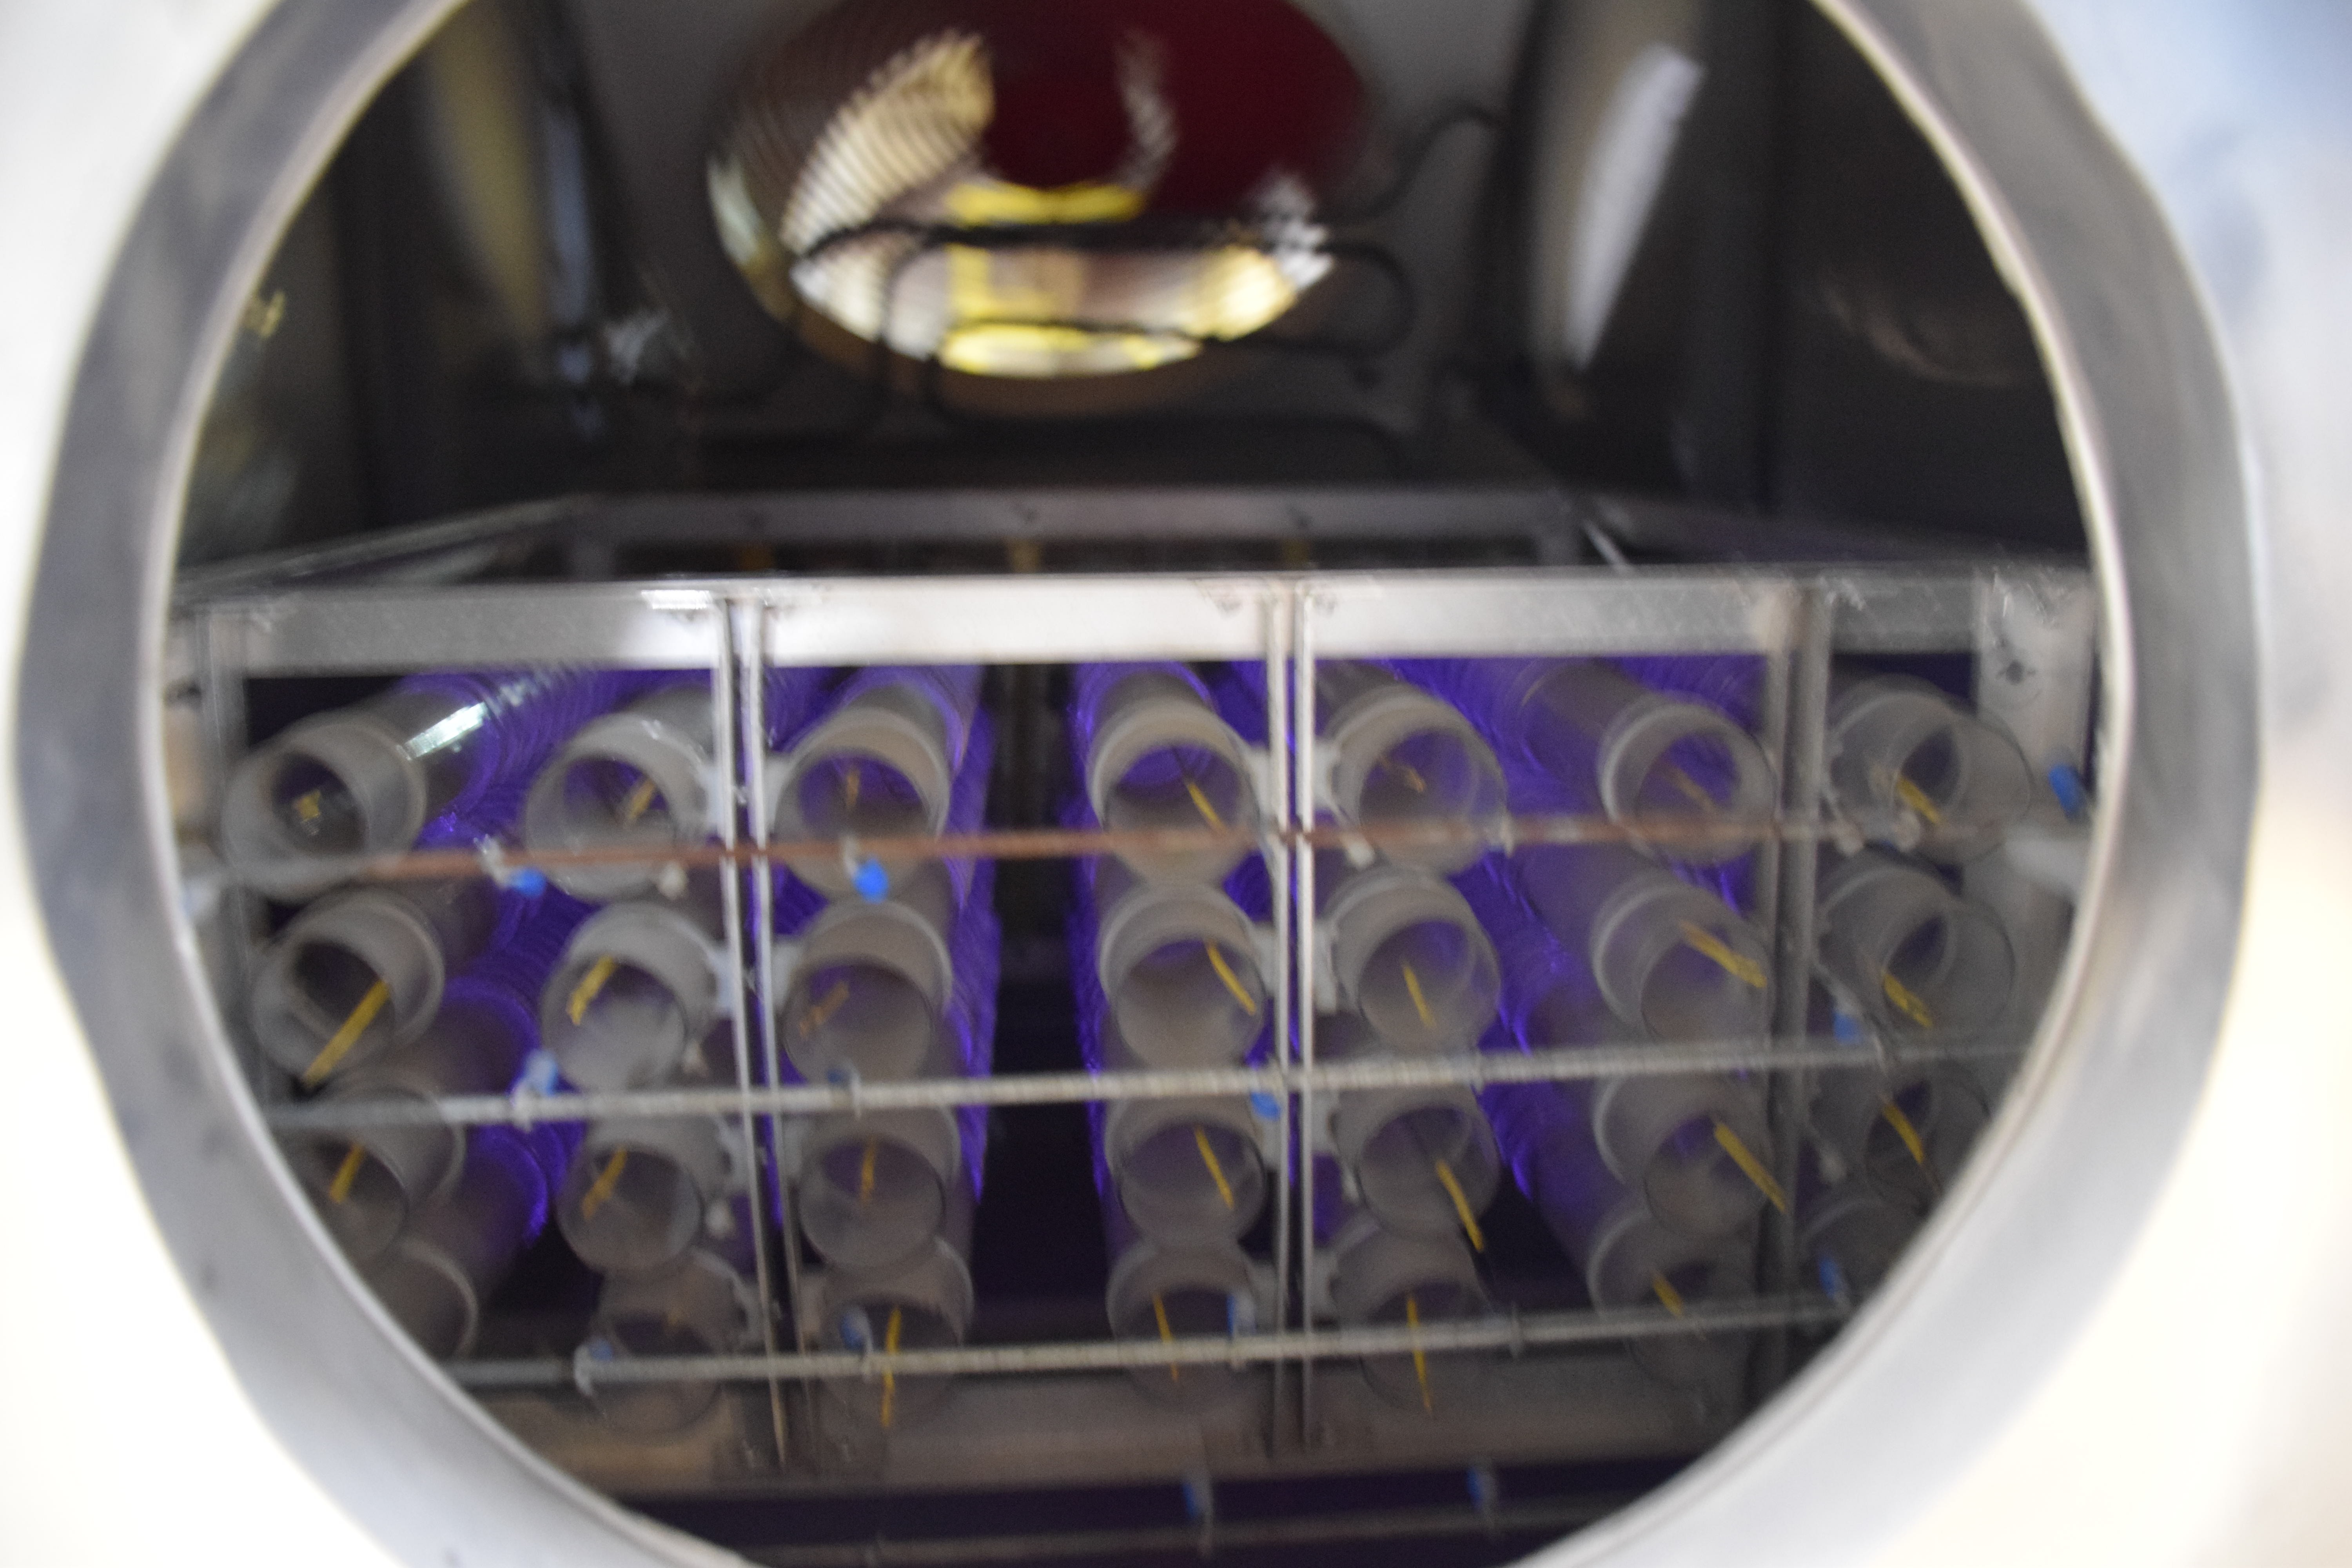   Олео протеин тества инсталация със студена плазма за пречистване на неорганизираните производствени миризми  